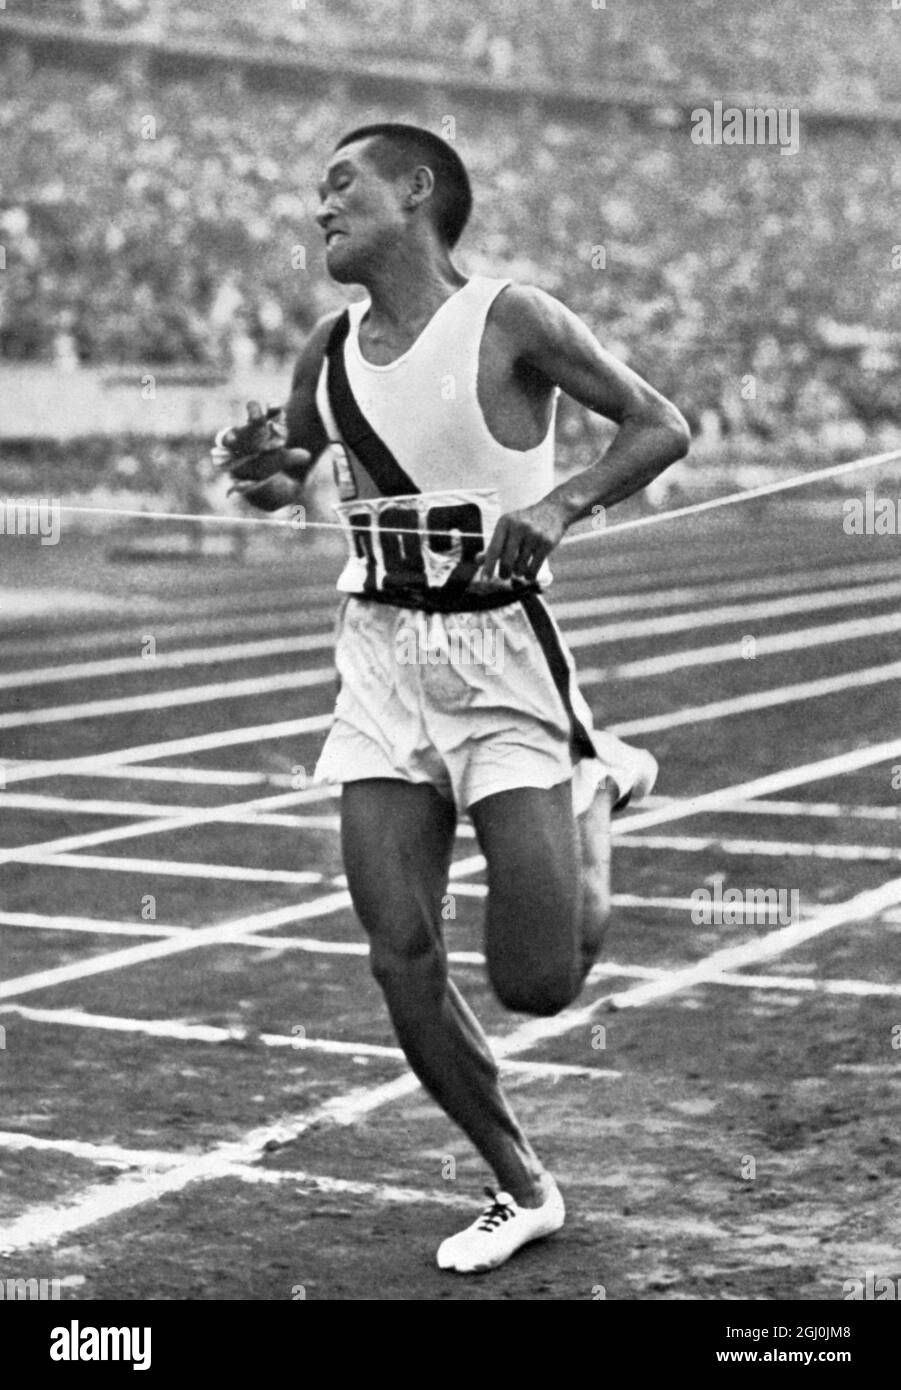 Olympia 1936, Berlin - aufrecht, stark und in gutem Zustand, steht Kitei Son, der harte japanische Marathonläufer nach 42 km, im olympiastadion an erster Stelle. ©TopFoto Stockfoto